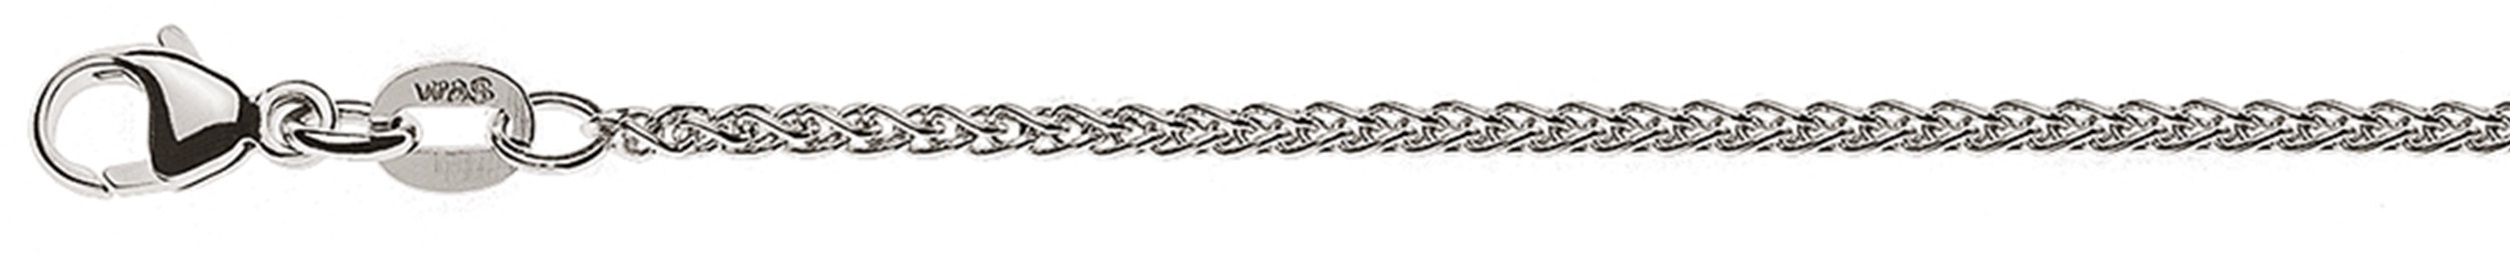 AURONOS Élégance Necklace white gold 14K cable chain 45cm 1.65mm